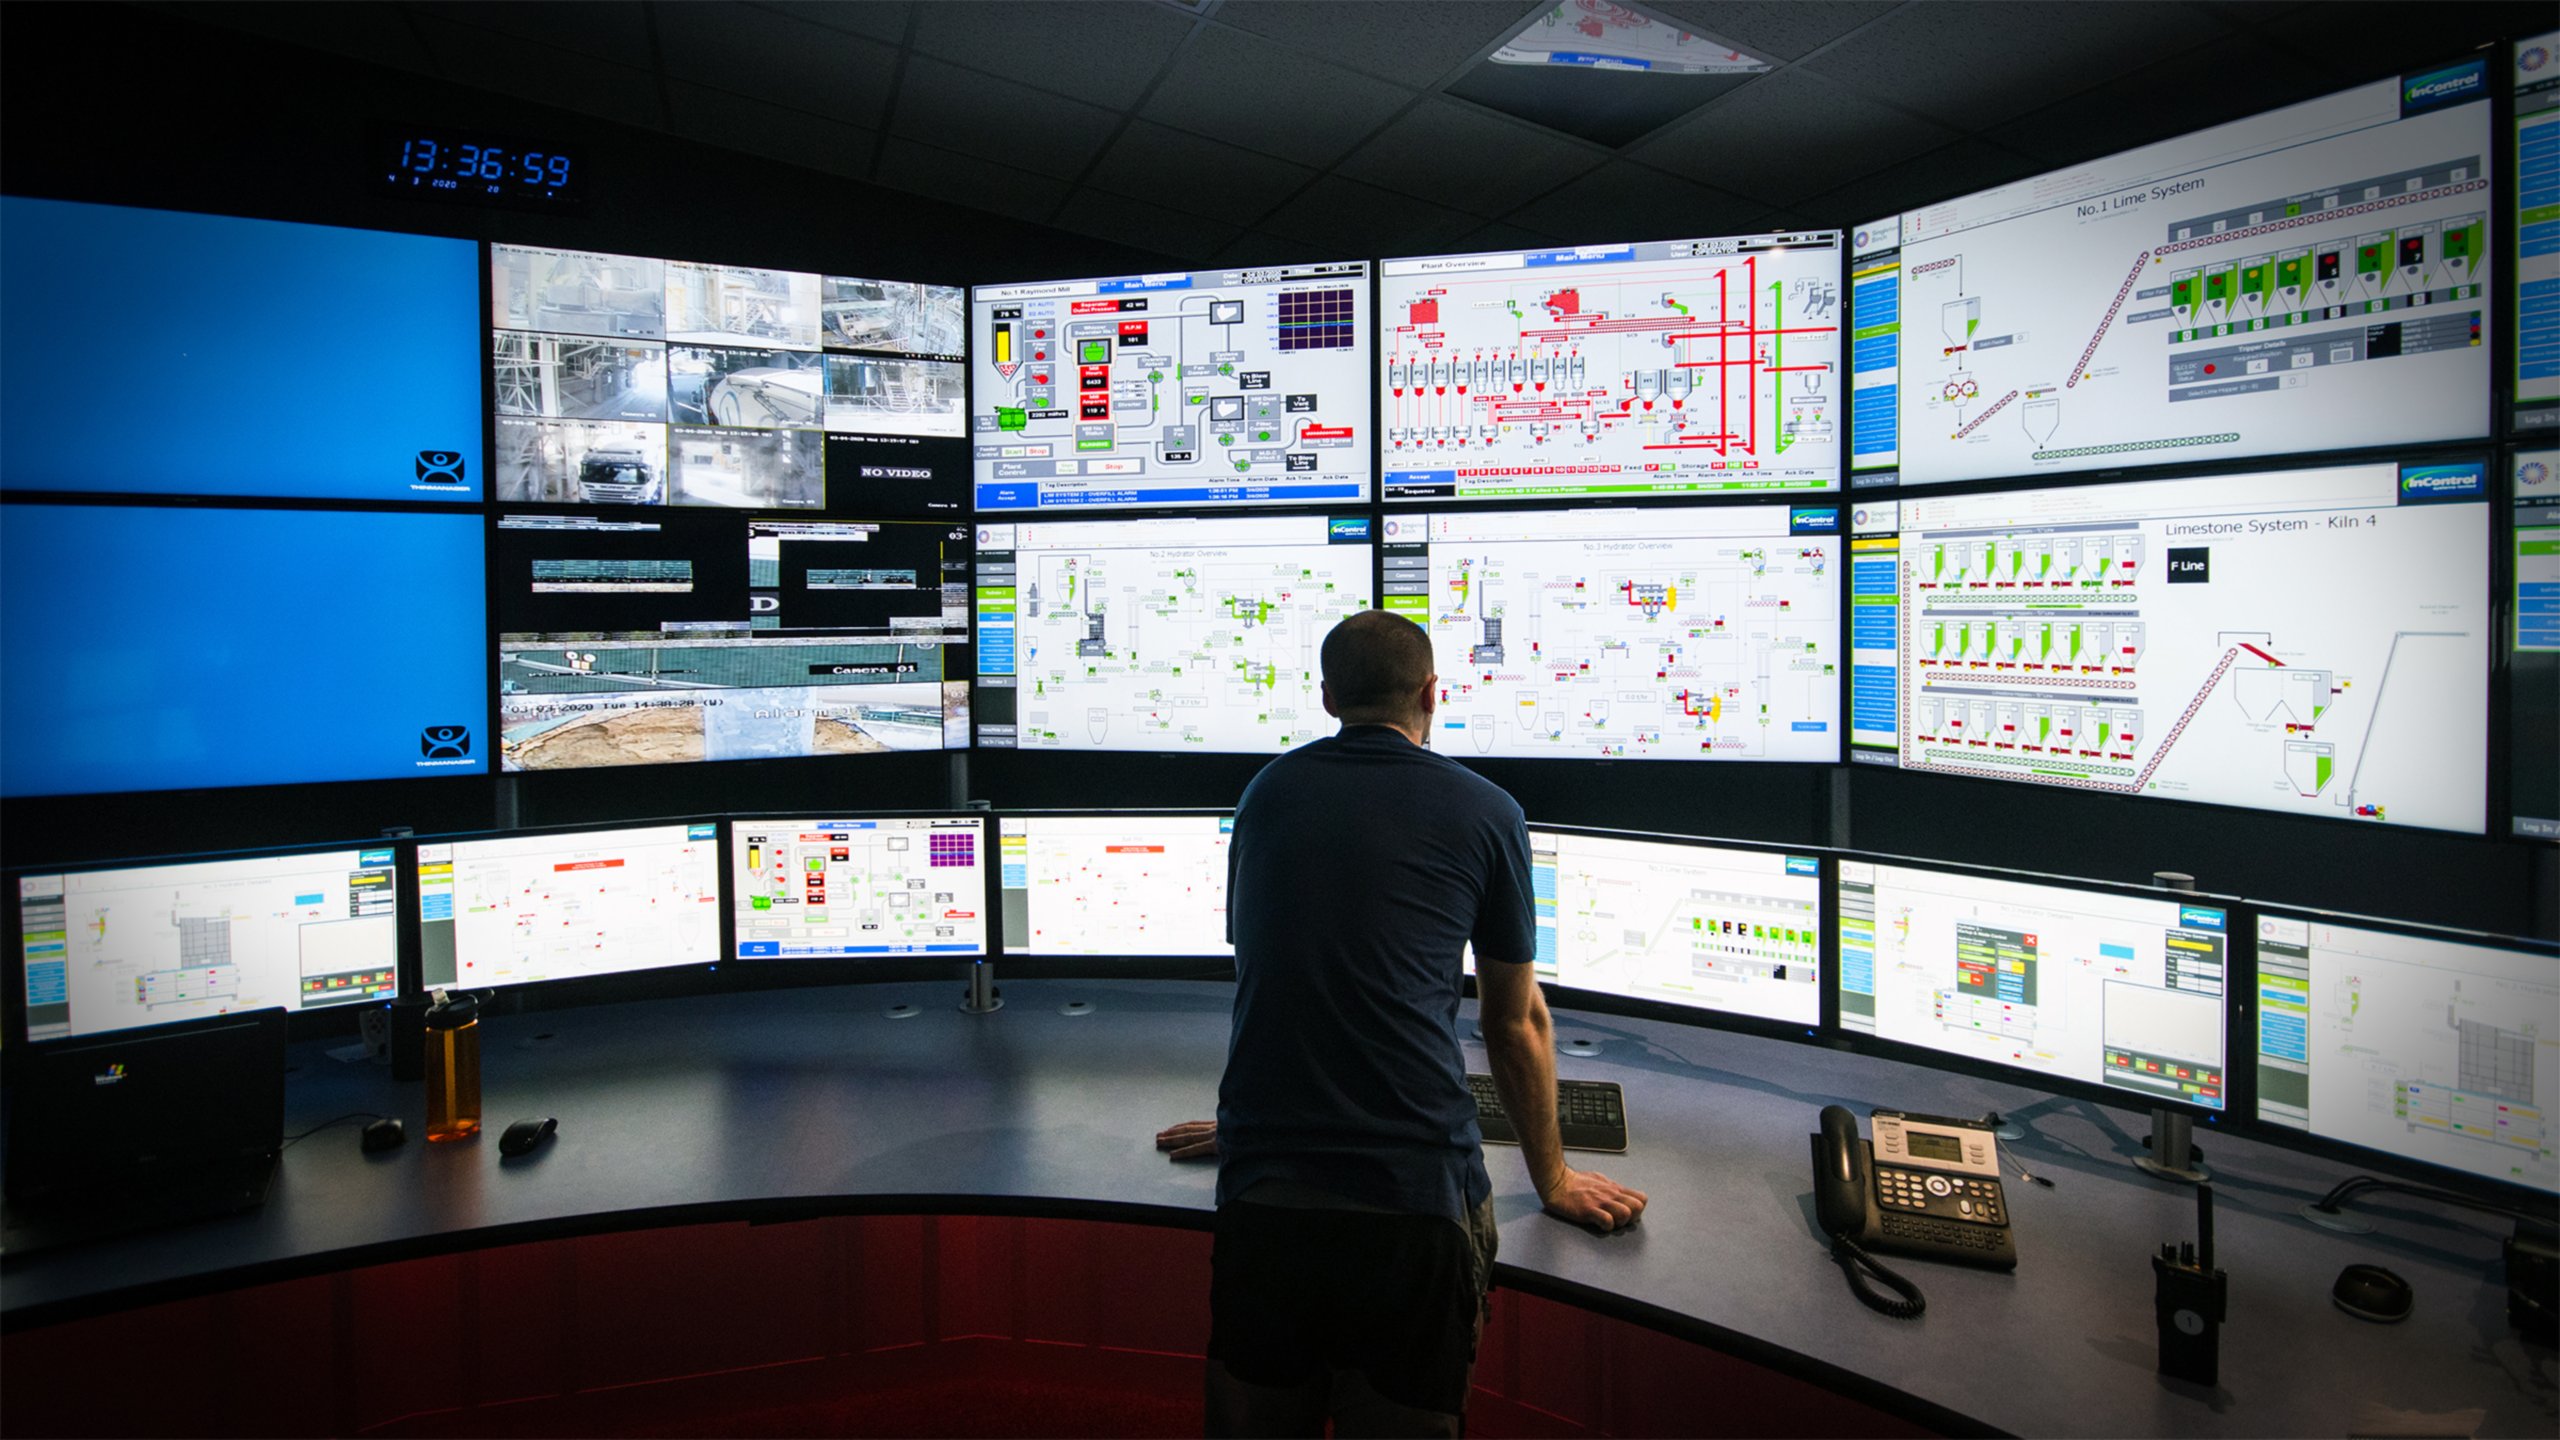 Ingenieur steht vor einem großen, geschwungenen Schreibtisch und blickt auf mehrere Monitore auf einer Wand, einschließlich einer Vielzahl verschiedener Bildschirme von einer Software-Anwendung